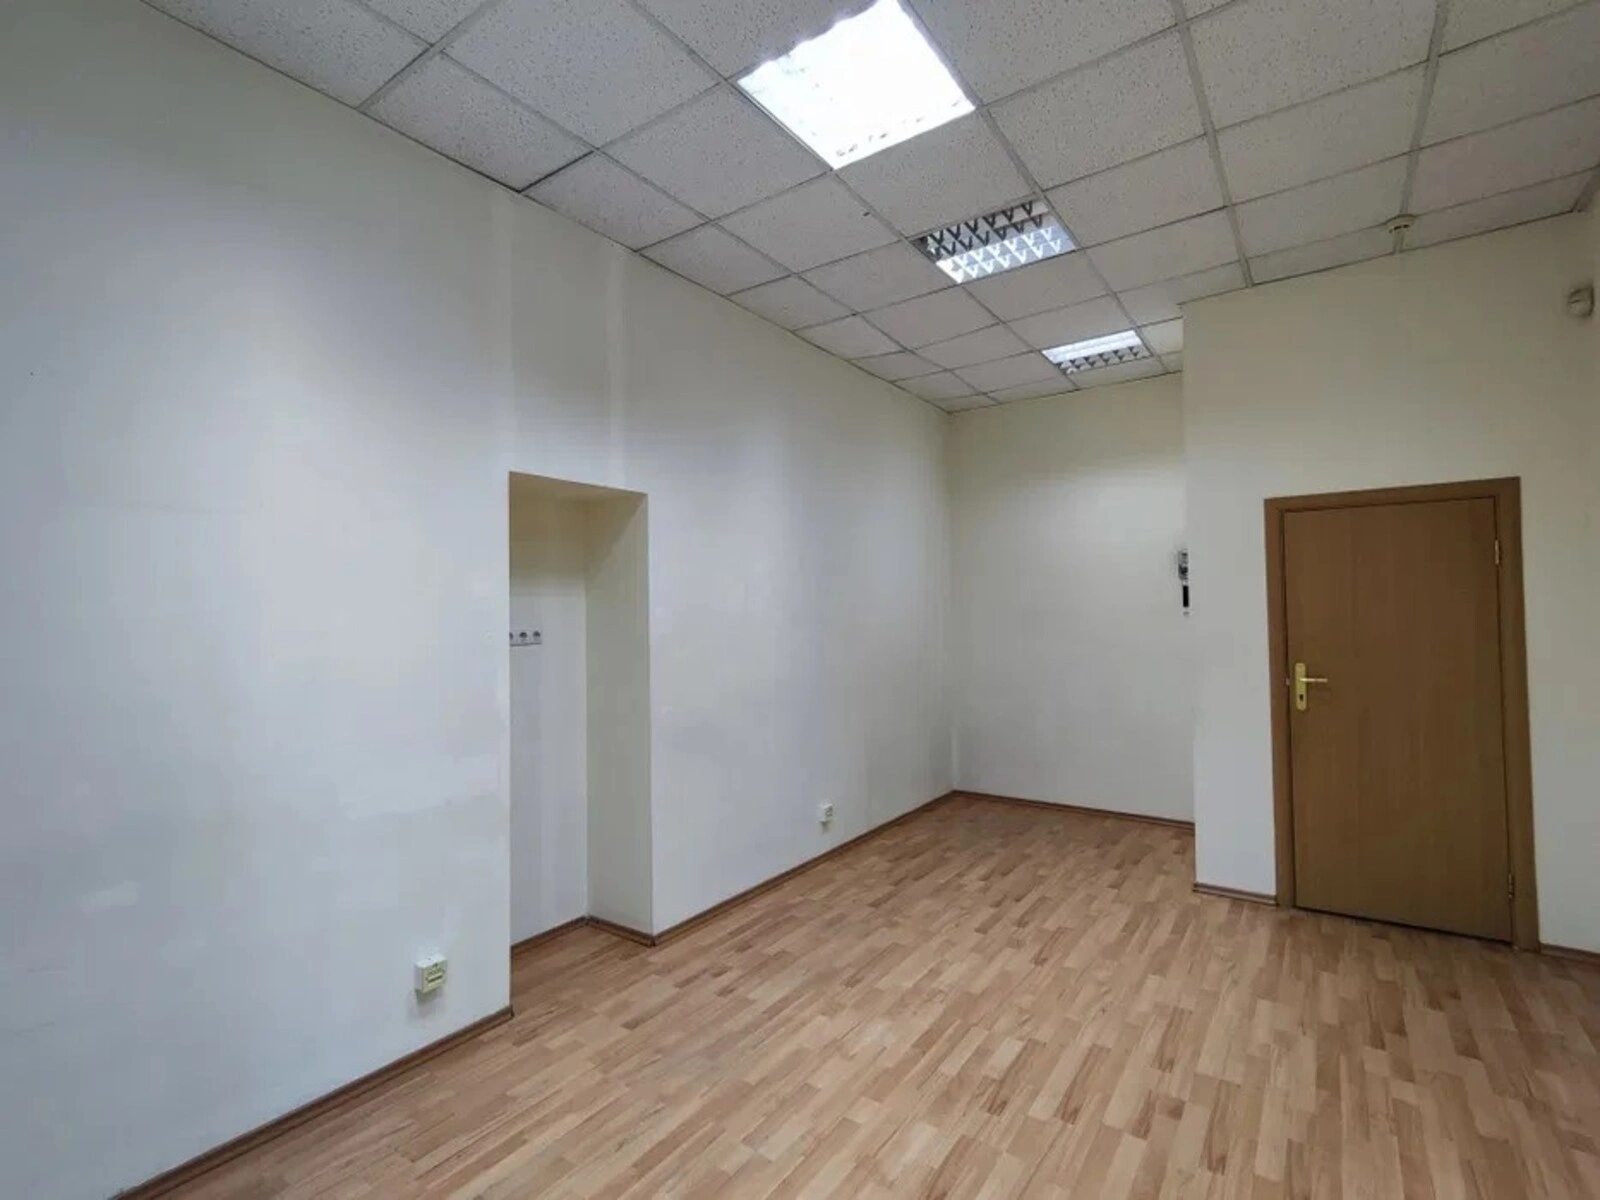 Сдам офис 44 метра на ул.Сечевых Стрельцов.